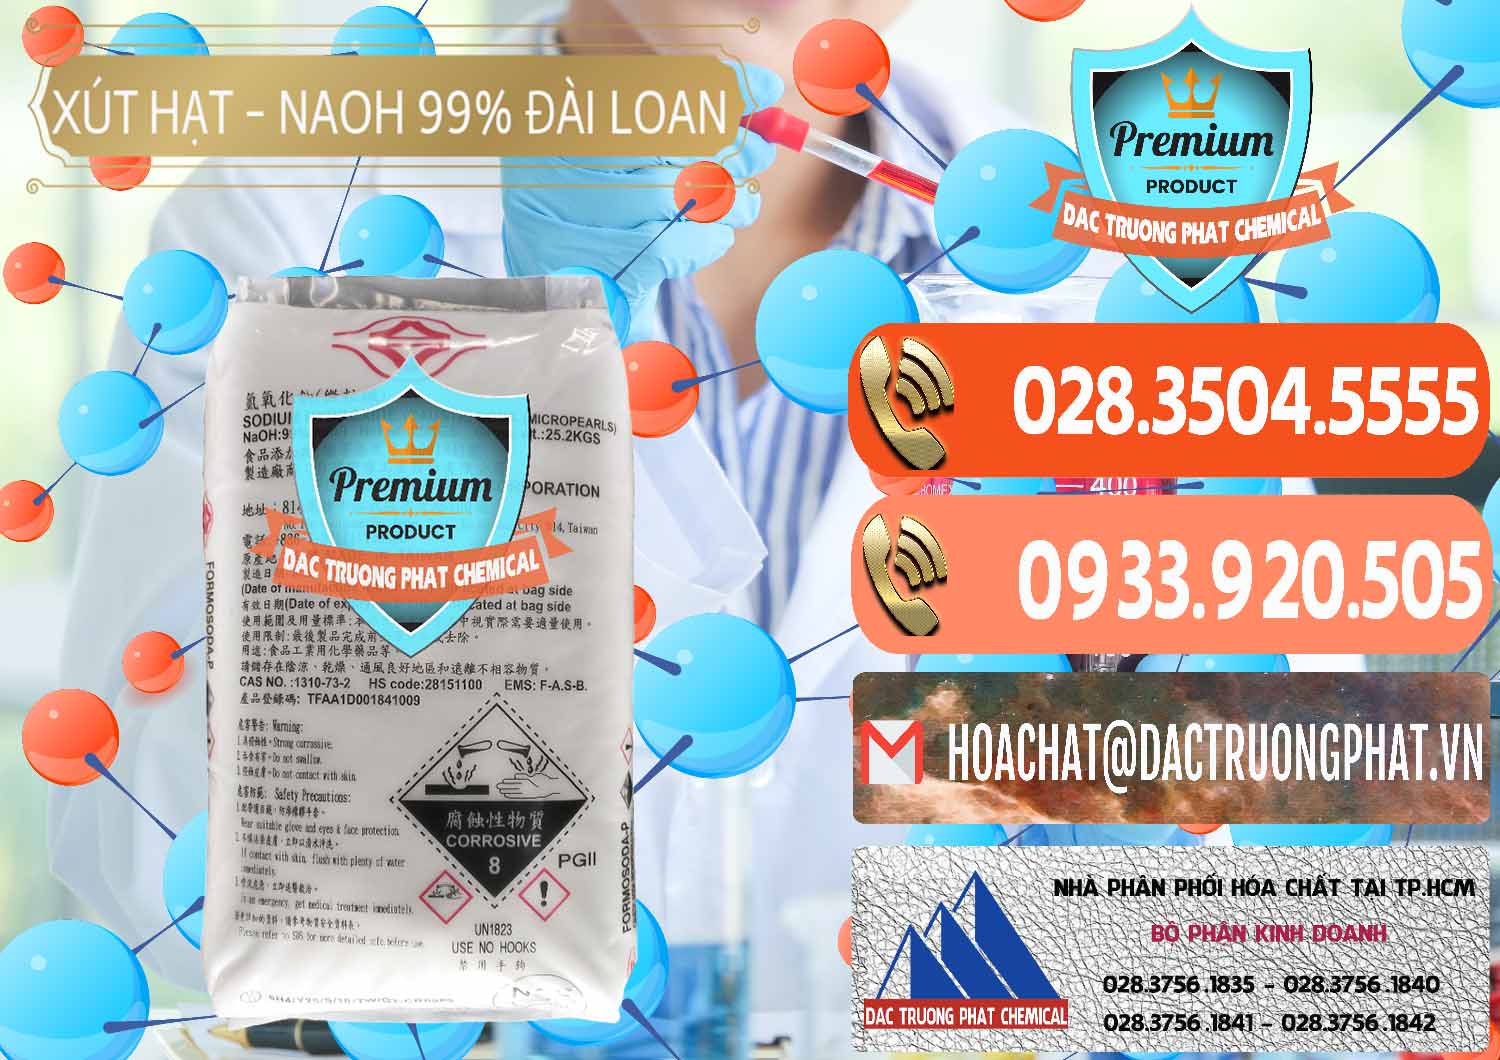 Nơi chuyên kinh doanh ( bán ) Xút Hạt - NaOH Bột 99% Đài Loan Taiwan Formosa - 0167 - Đơn vị chuyên bán - phân phối hóa chất tại TP.HCM - hoachatmientay.com